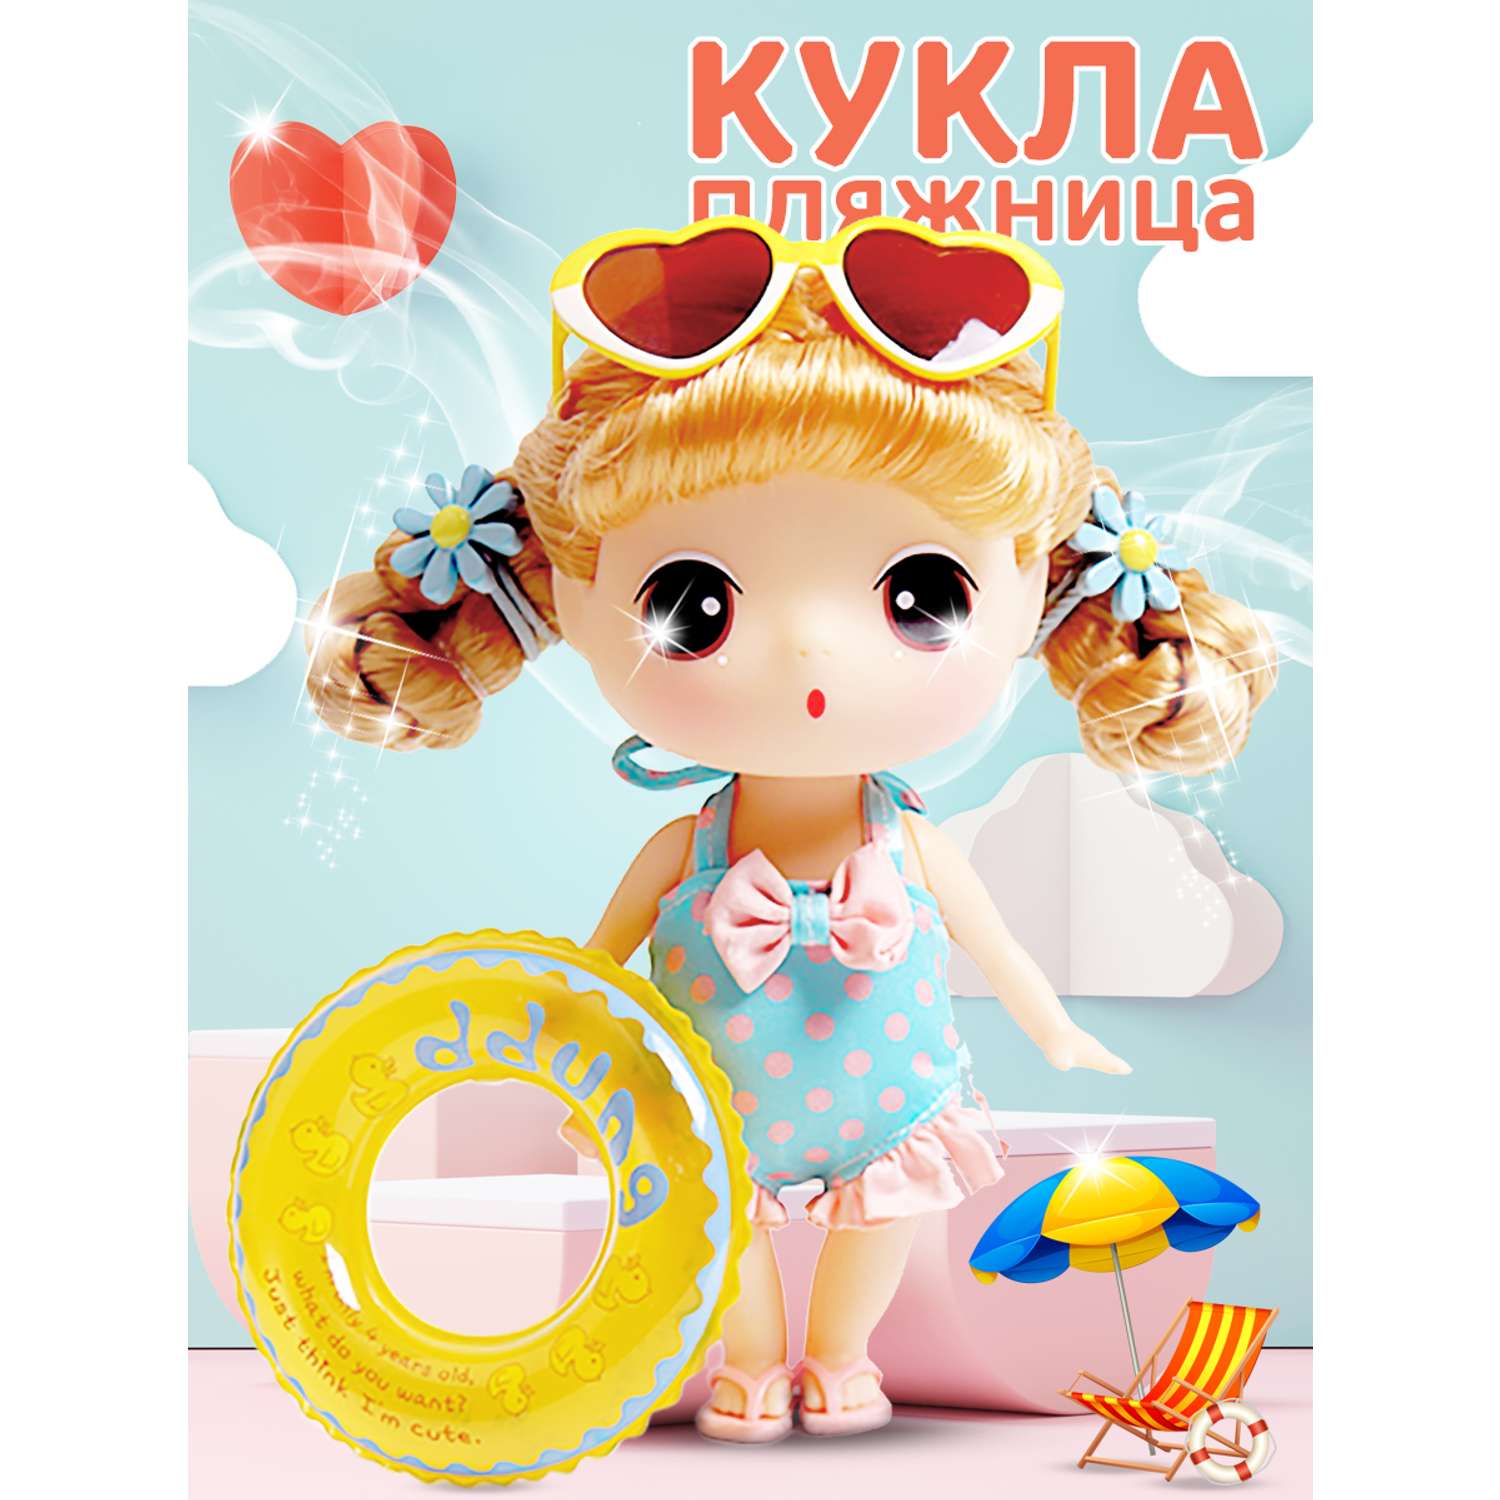 Кукла DDung Пляжница 18 см корейская игрушка аниме FDE1831 - фото 1